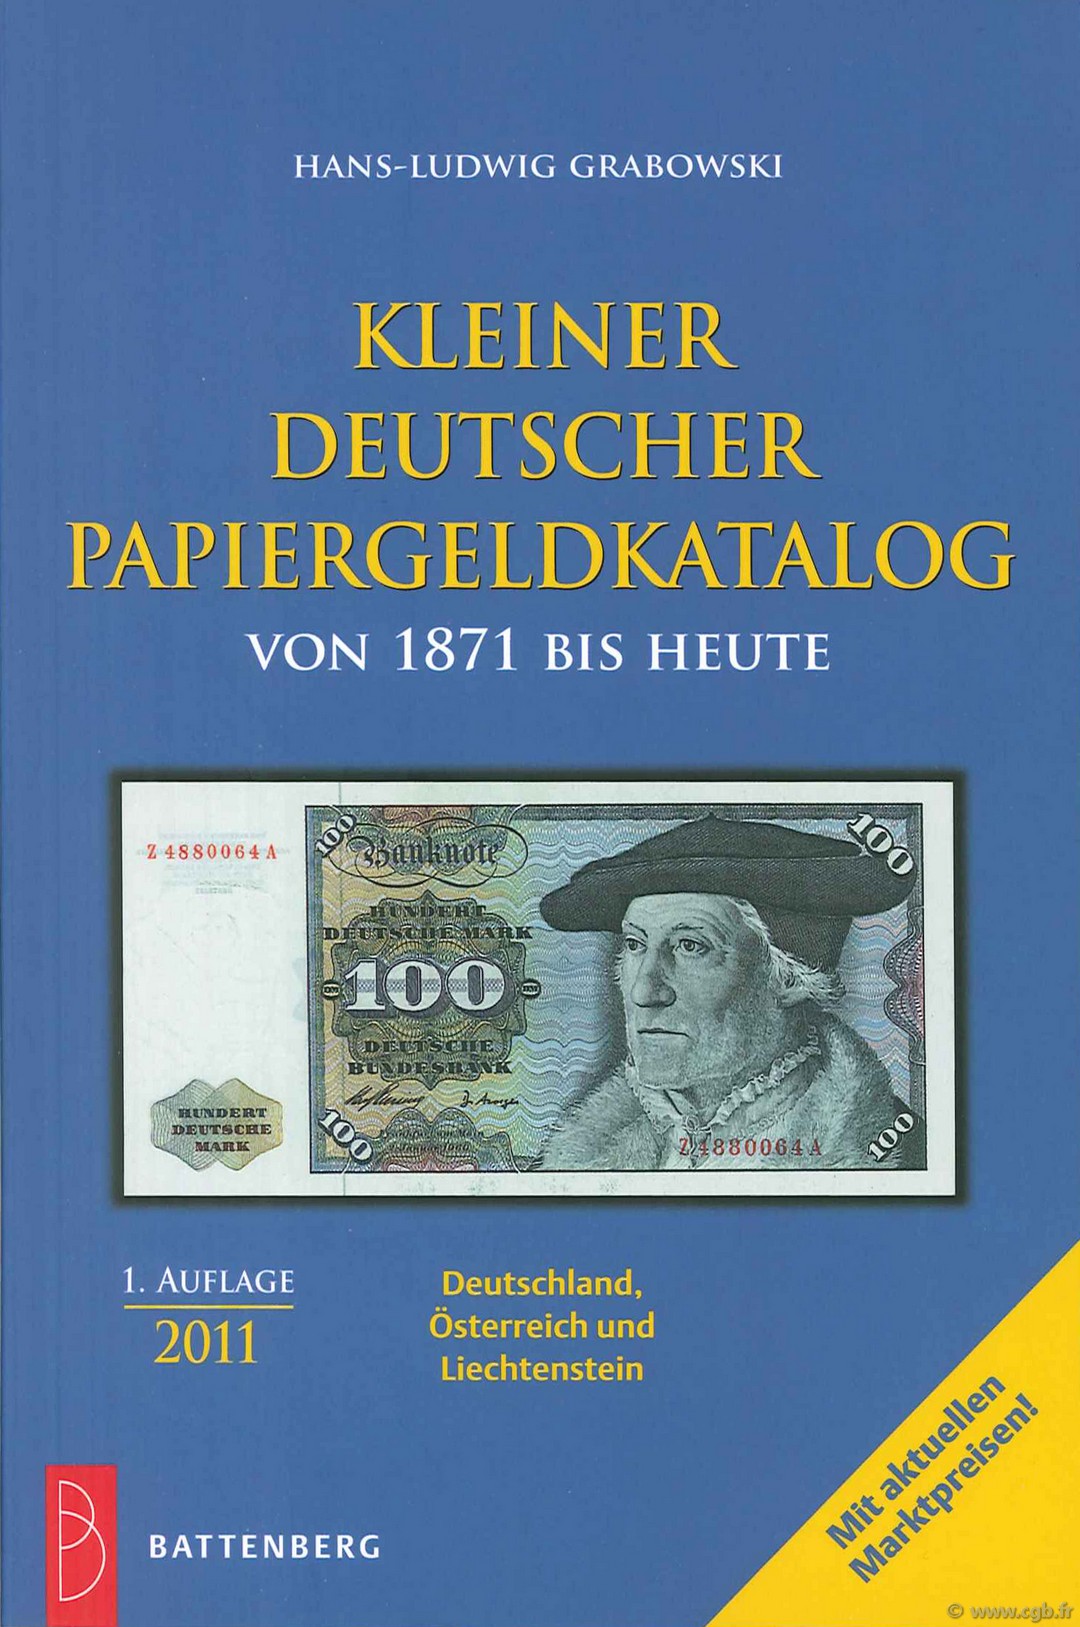 Kleiner Deutscher Papiergeldkatalog von 1871 bis heute - 1. auflage 2011 GRABOWSKI H.-L.